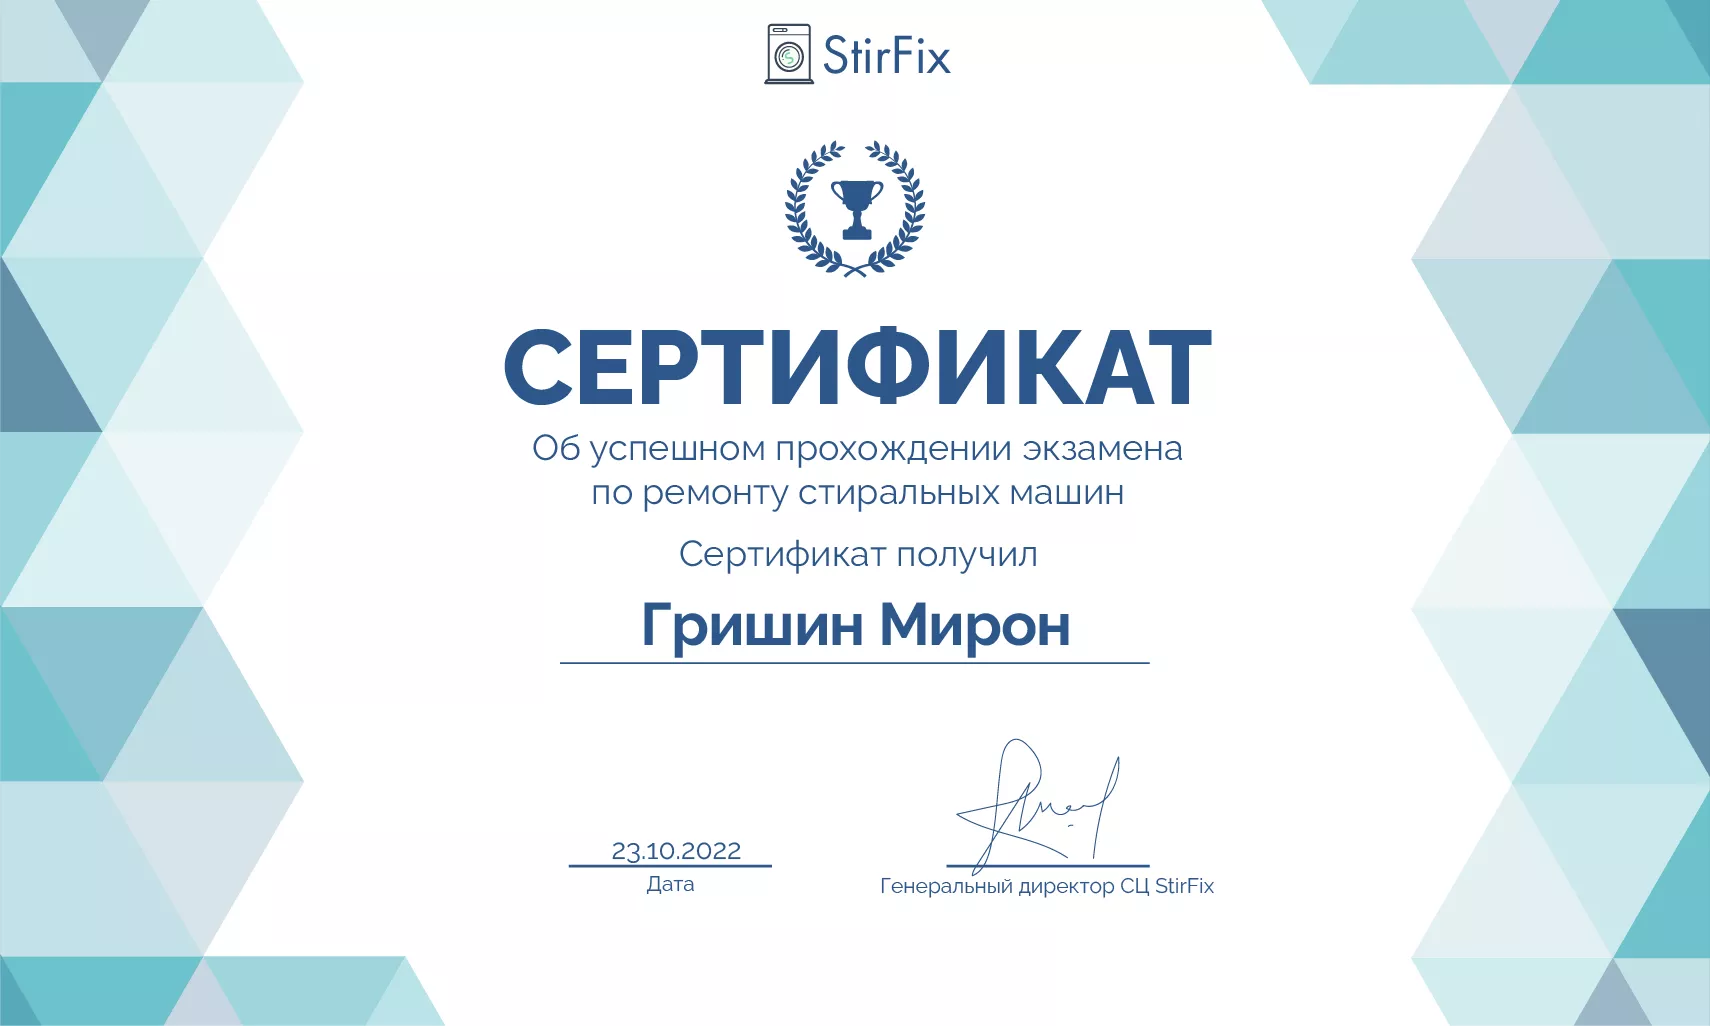 Гришин Мирон сертификат мастера по ремонту стиральных машин